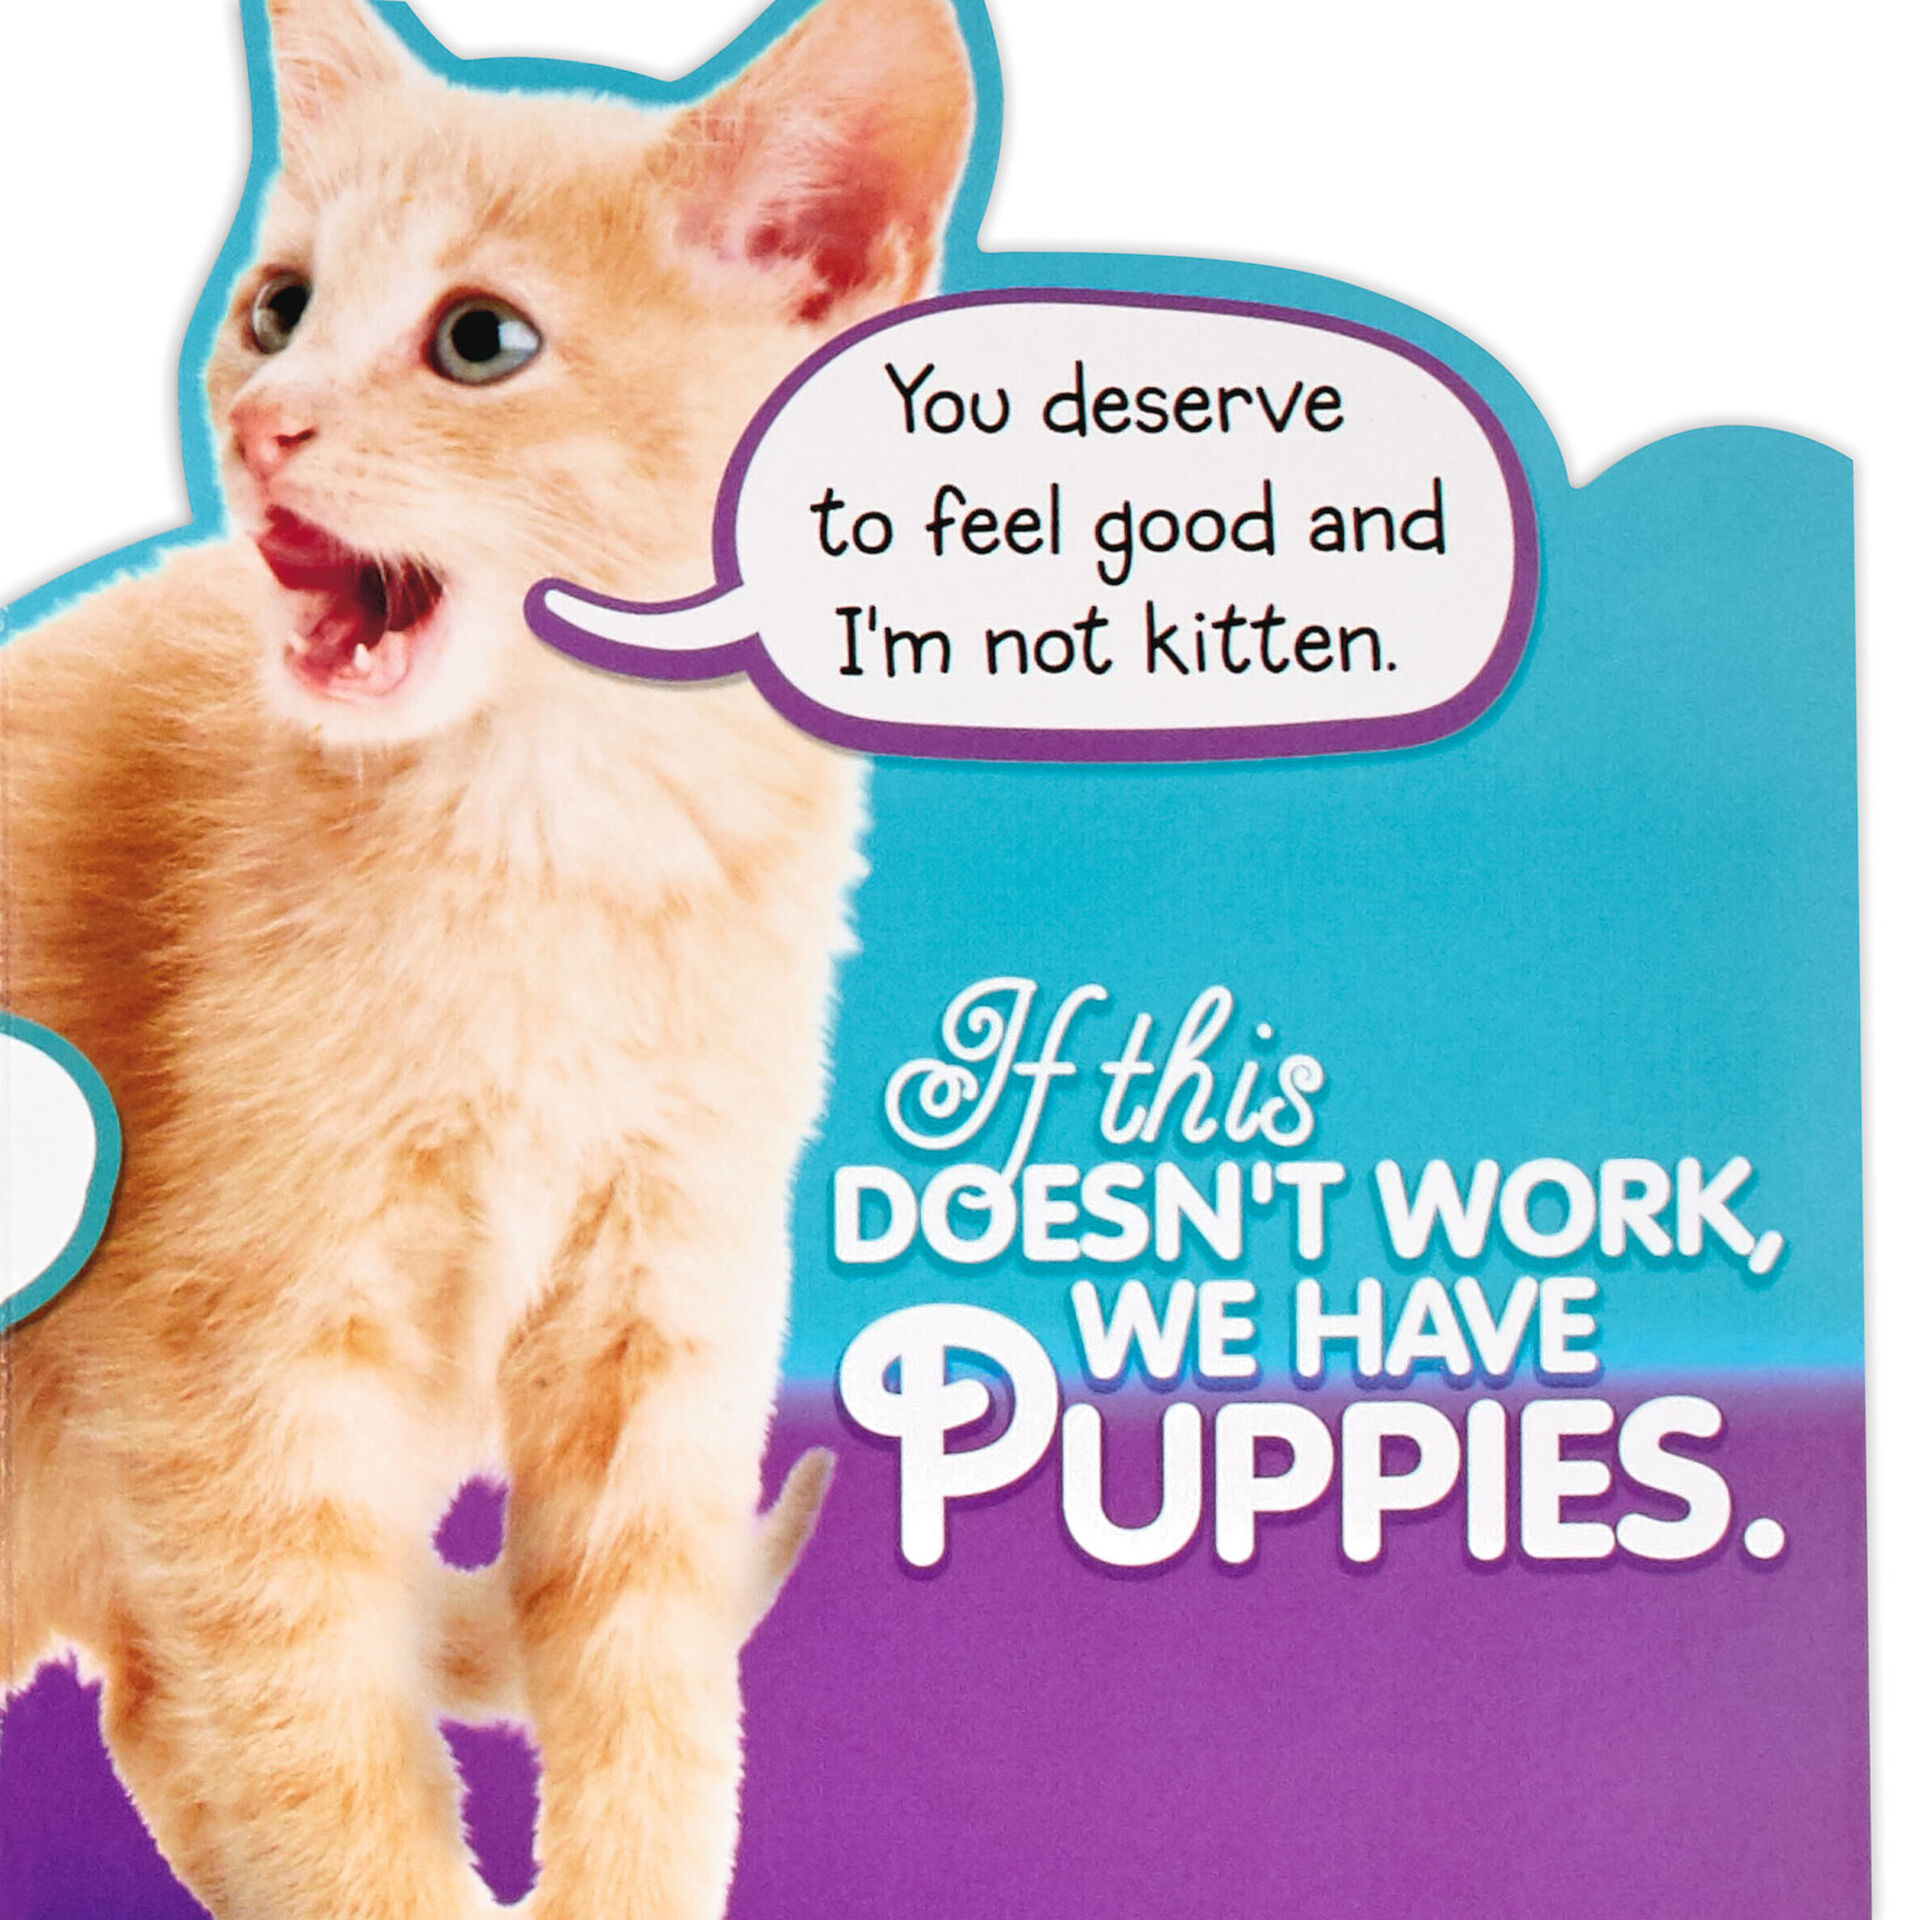 Cute-Kittens-Get-Well-Card_459C3132_03